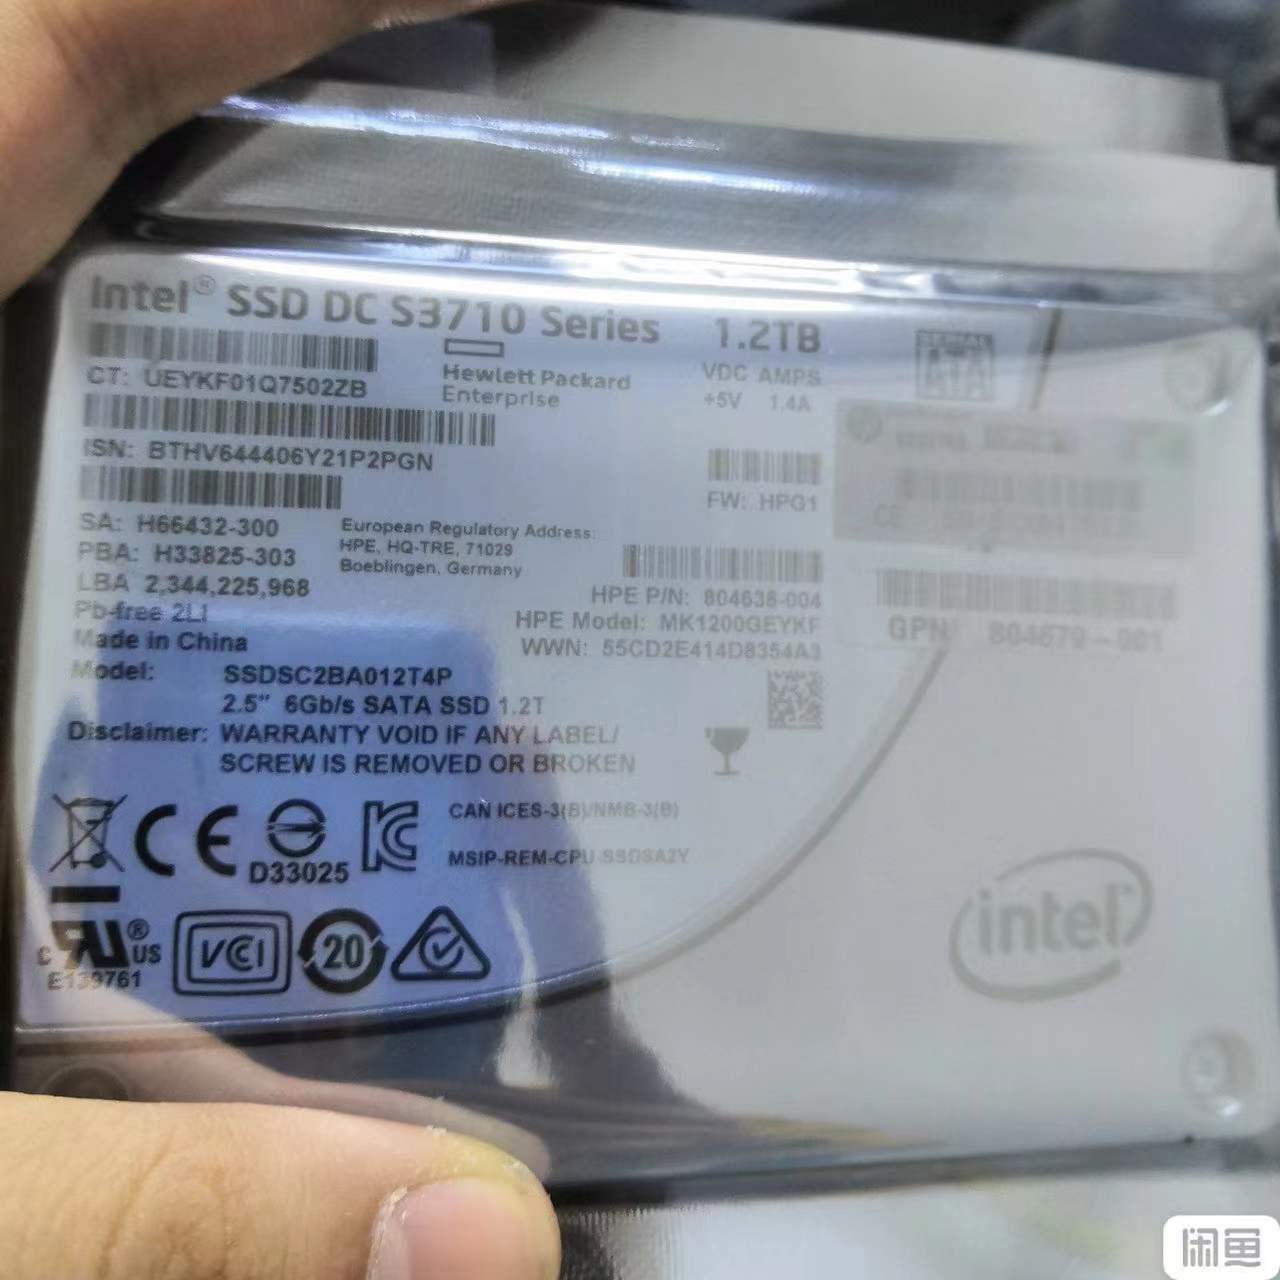 Intel 1.2TB SSD DC S3710 Series MLC SATA III 2.5